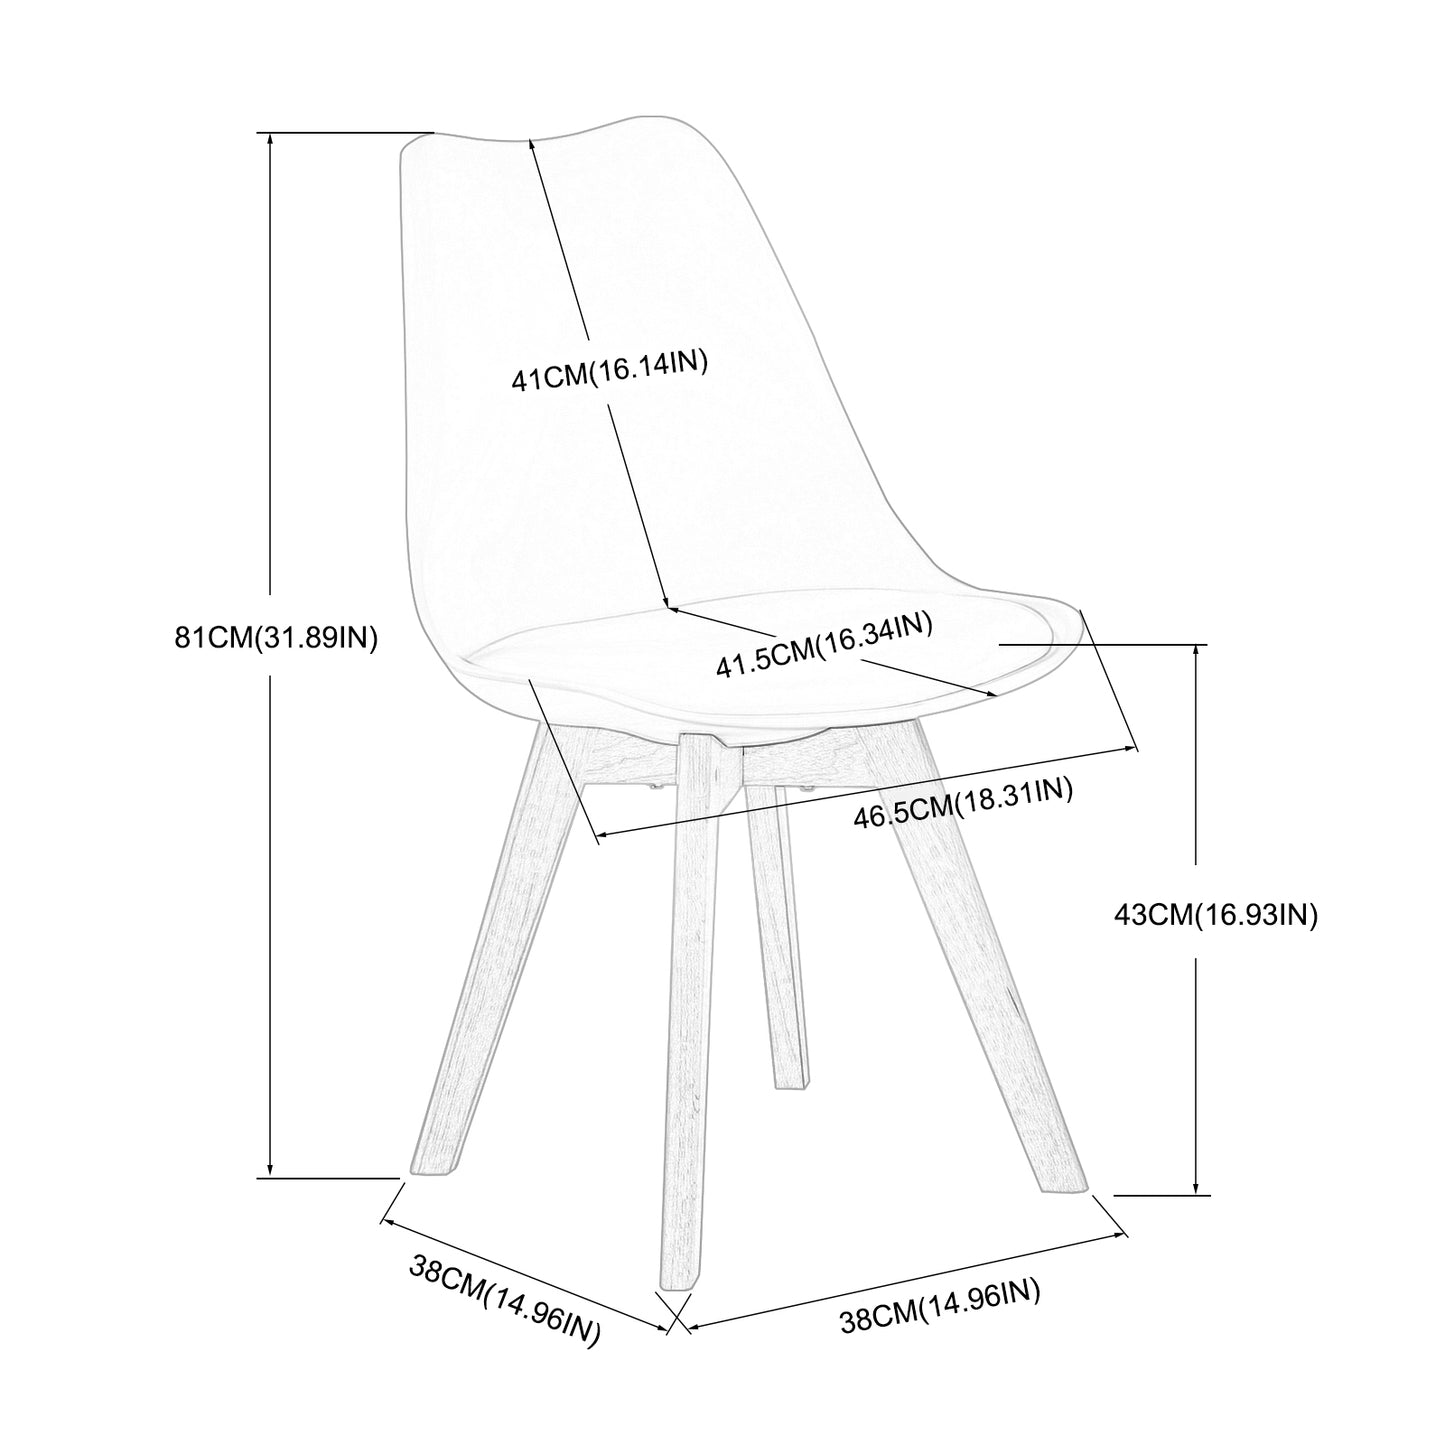 Lot de 4 chaises design contemporain nordique scandinave Blanc,chaises de cuisine en bois